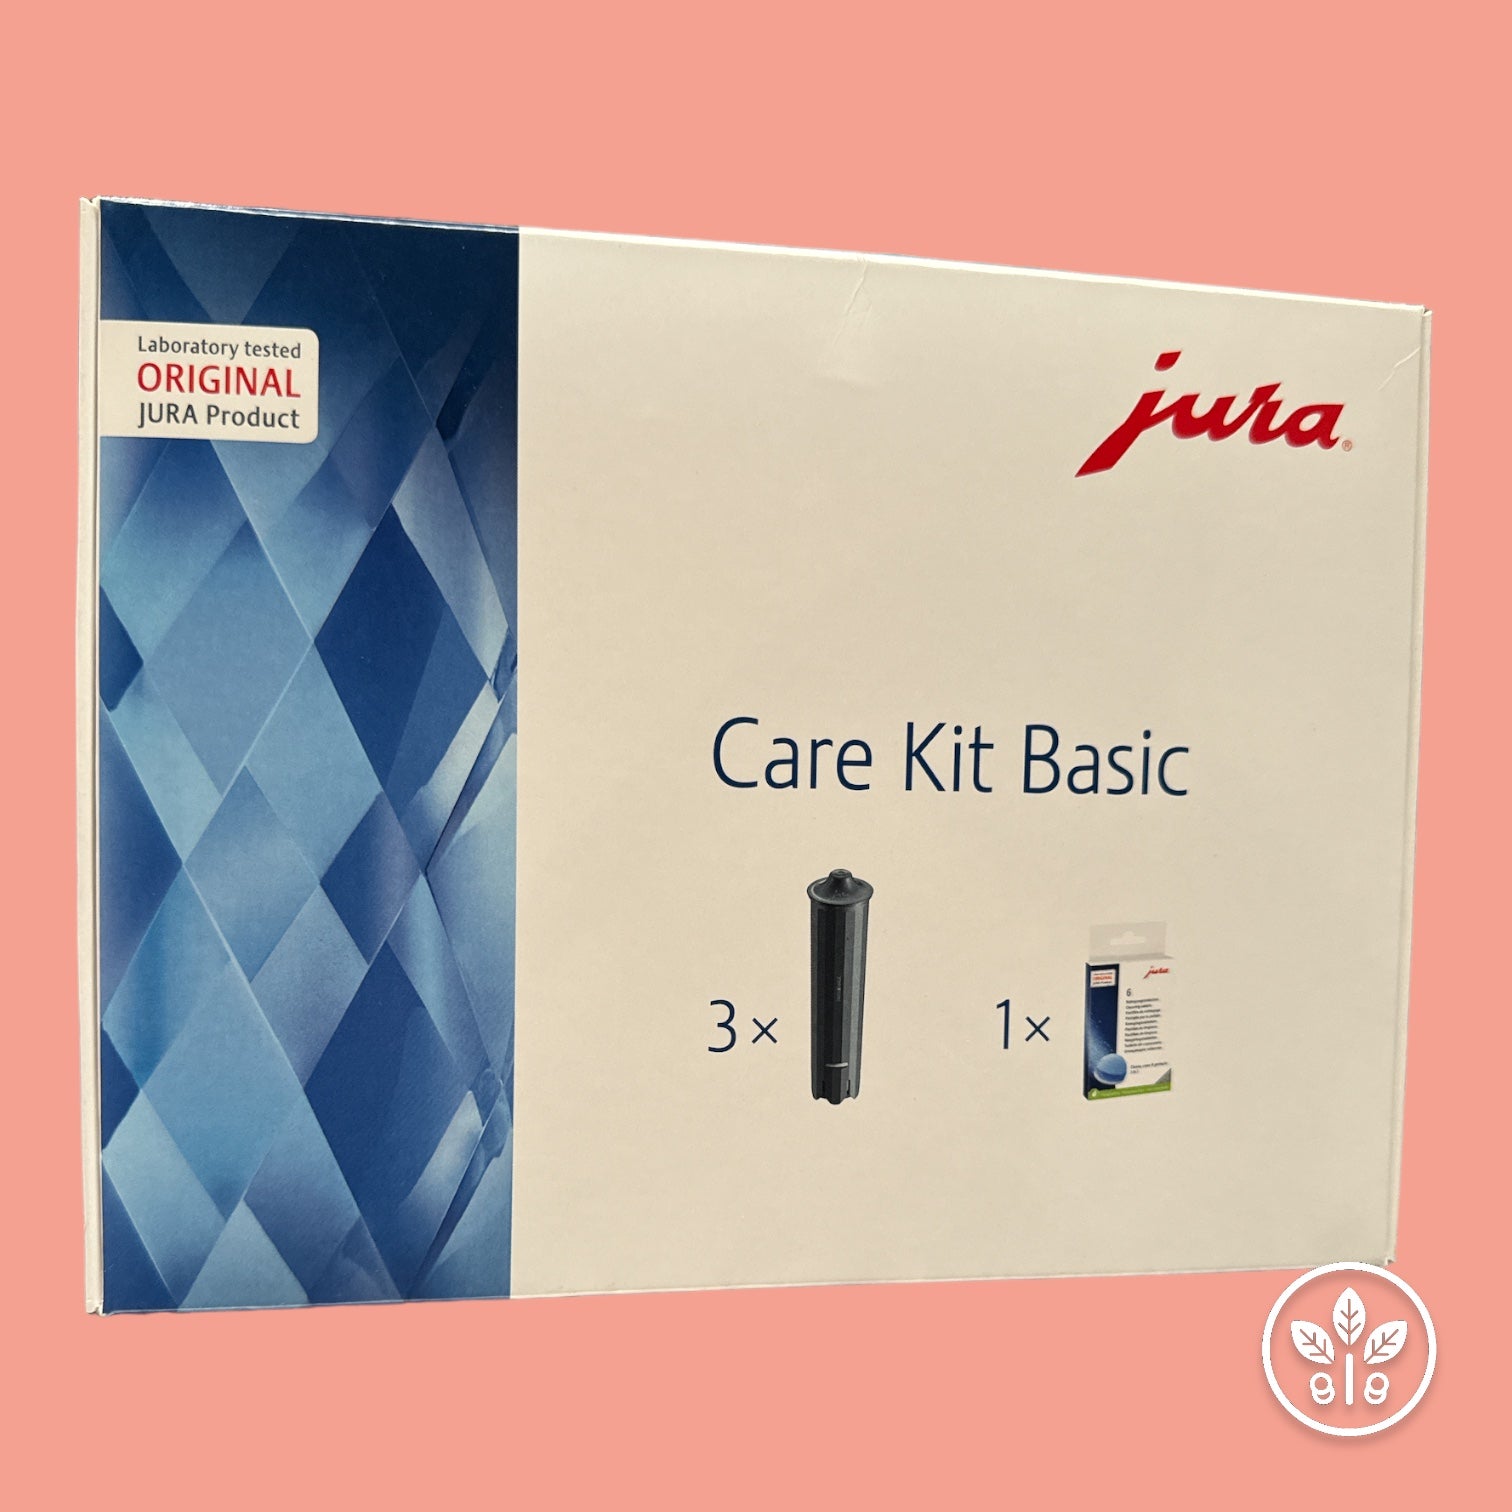 Care Kit Basic